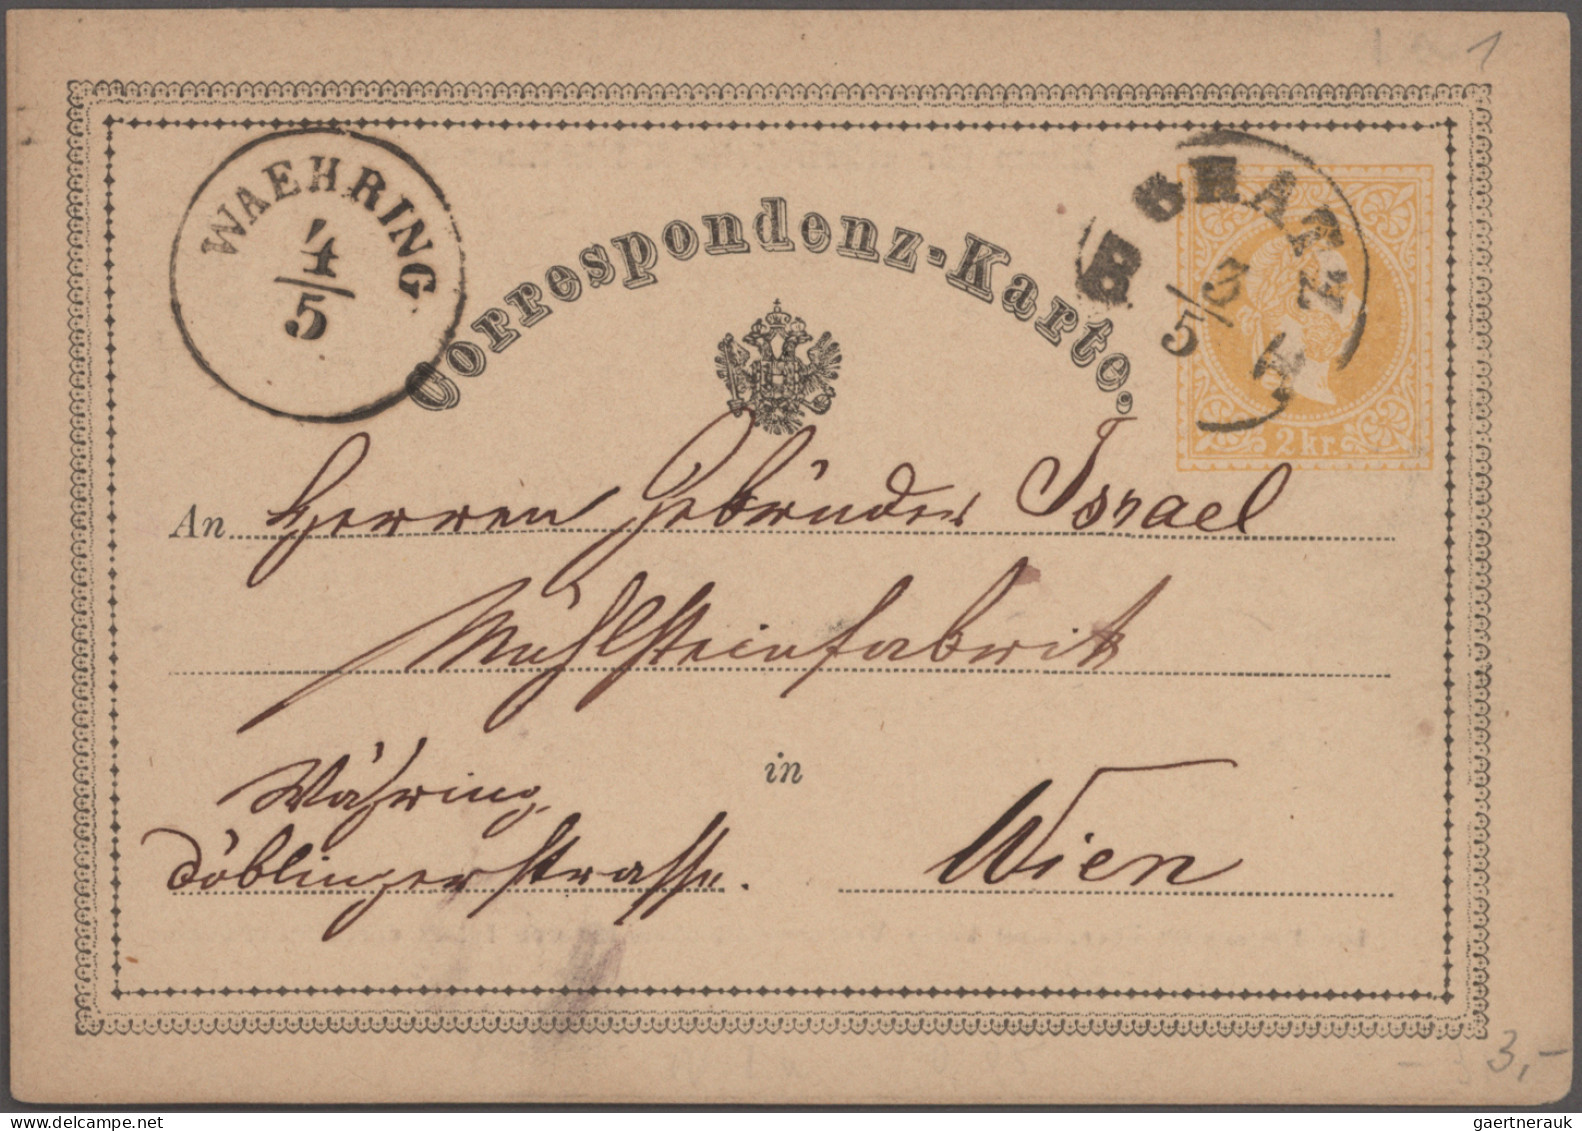 Österreich - Stempel: 1850/1900 ca.: Kollektion von mehr als 1000 Marken im Albu